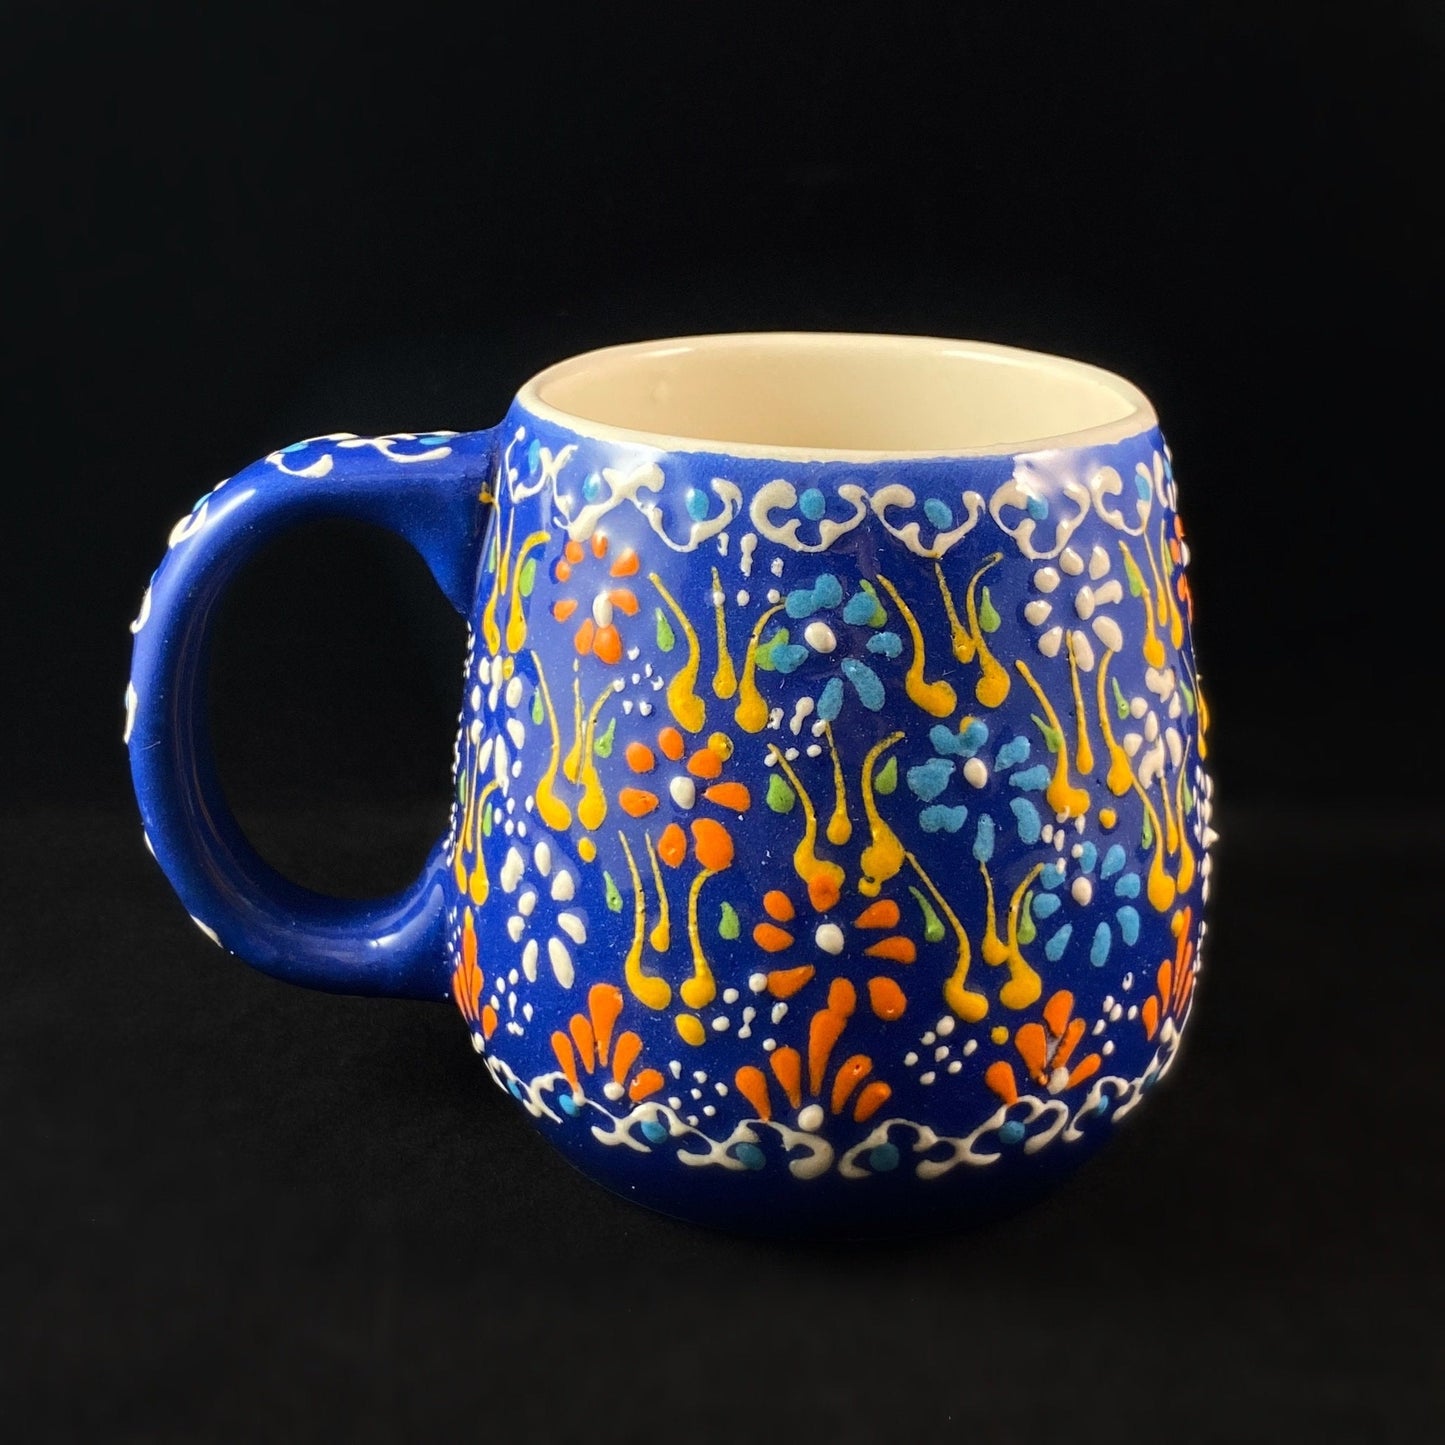 Handmade Mug, Functional and Decorative Turkish Pottery, Cottagecore Style, Blue